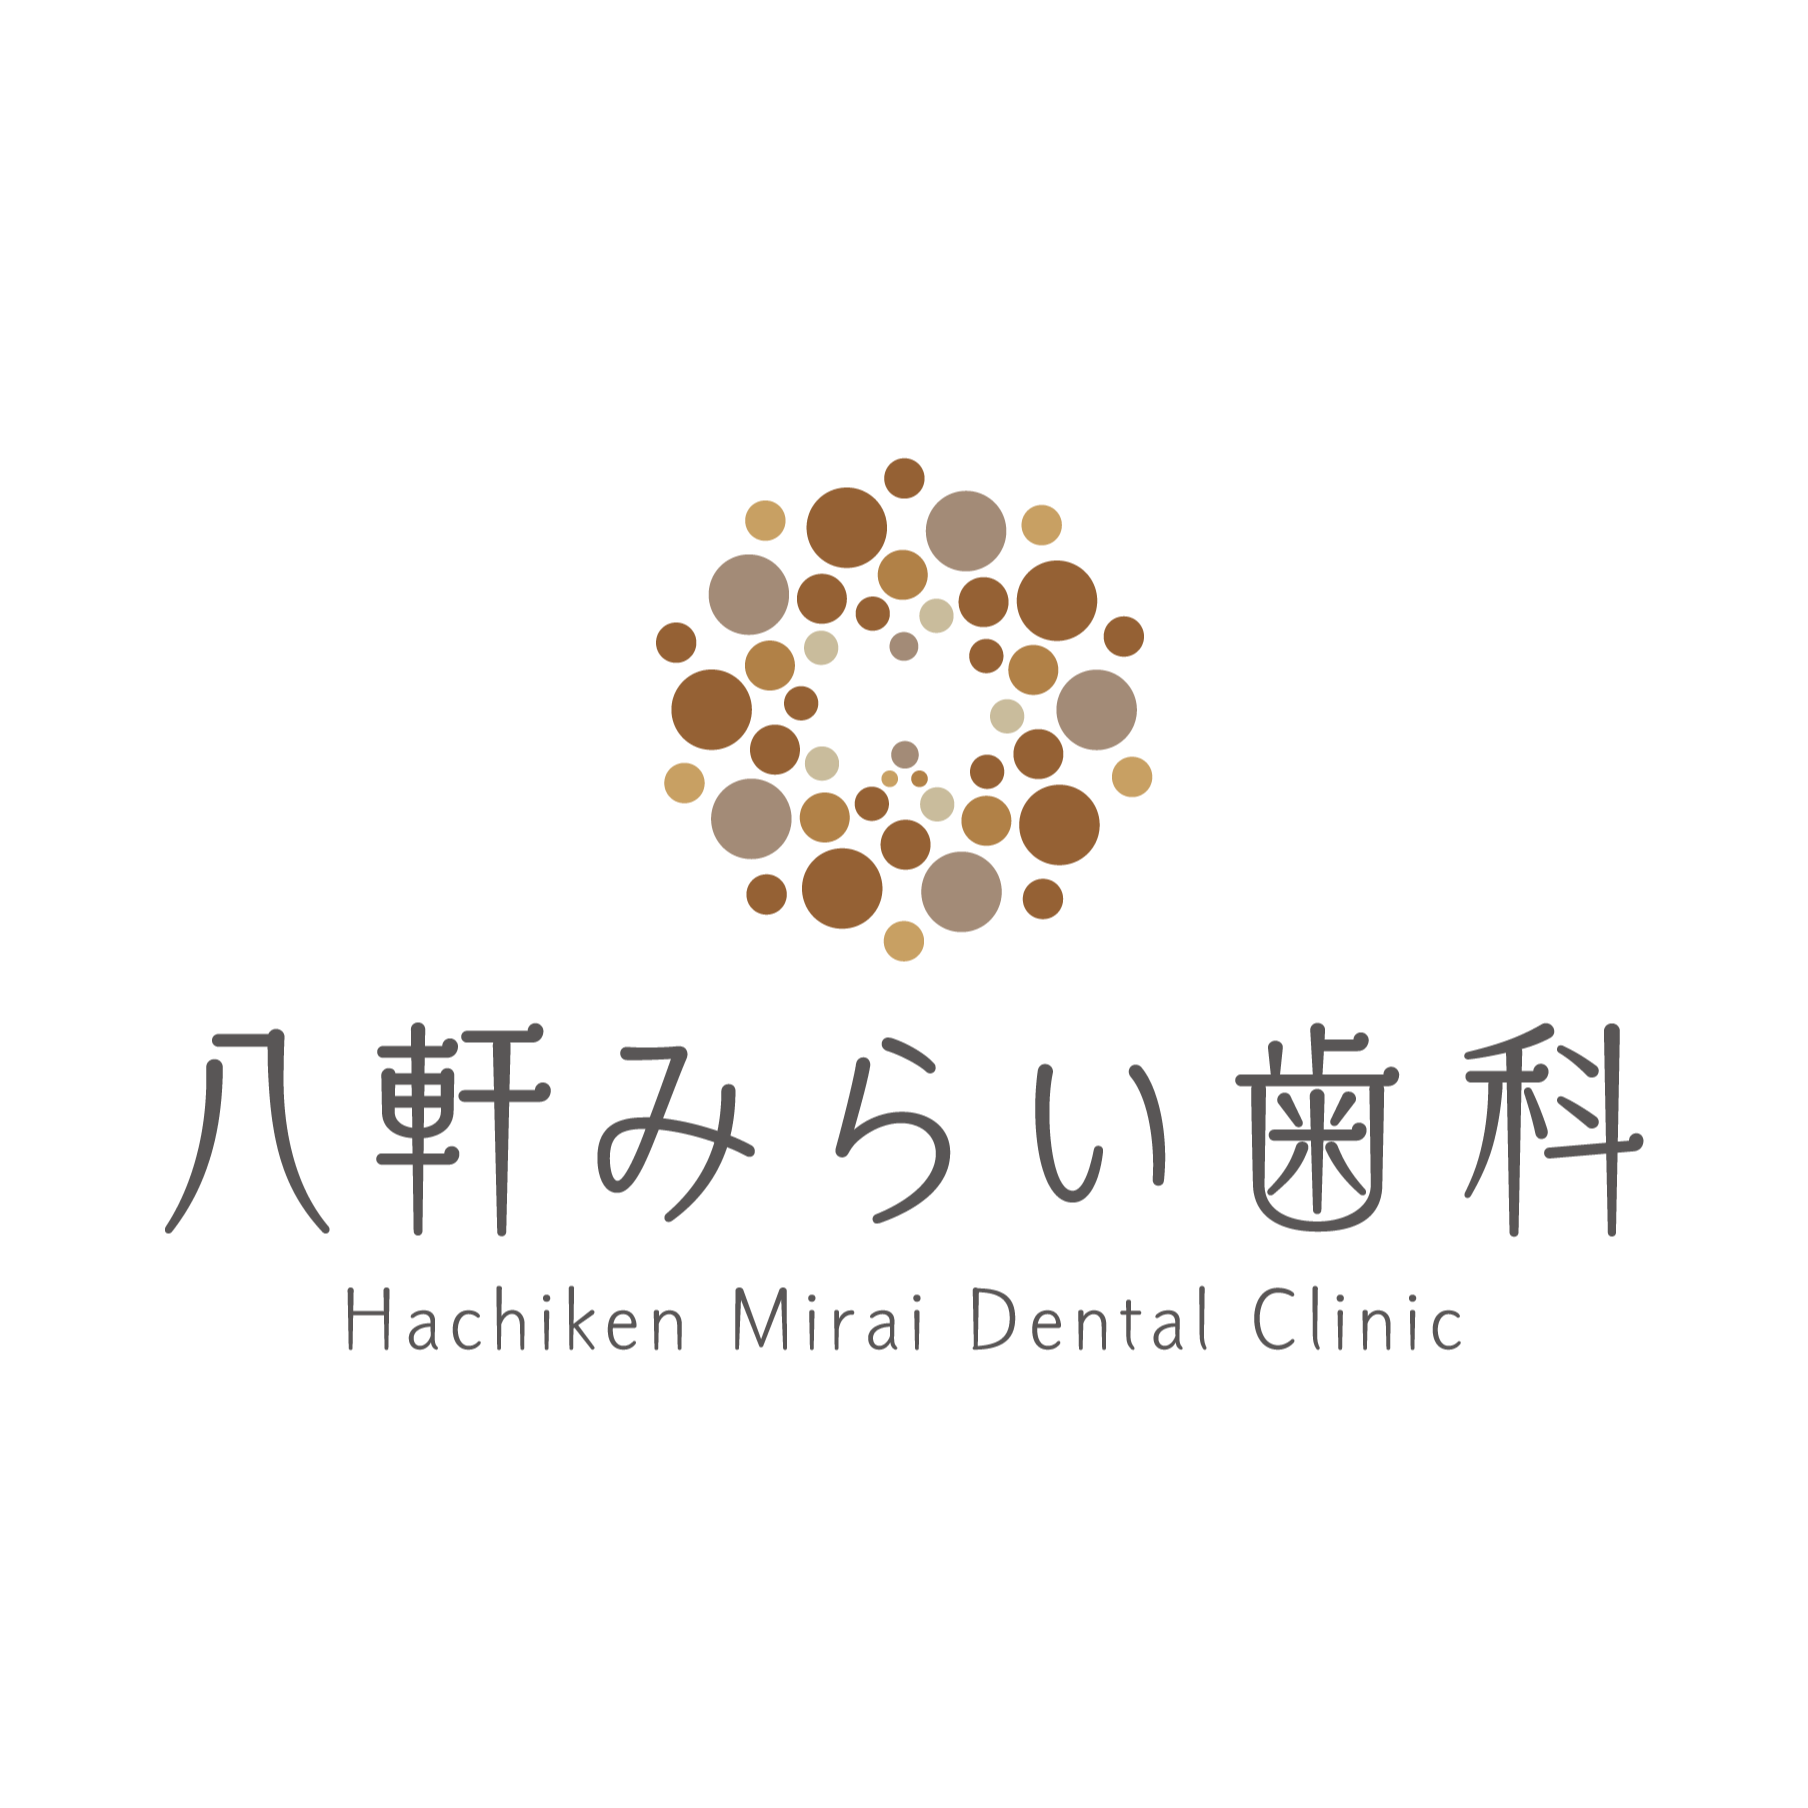 八軒みらい歯科 Logo